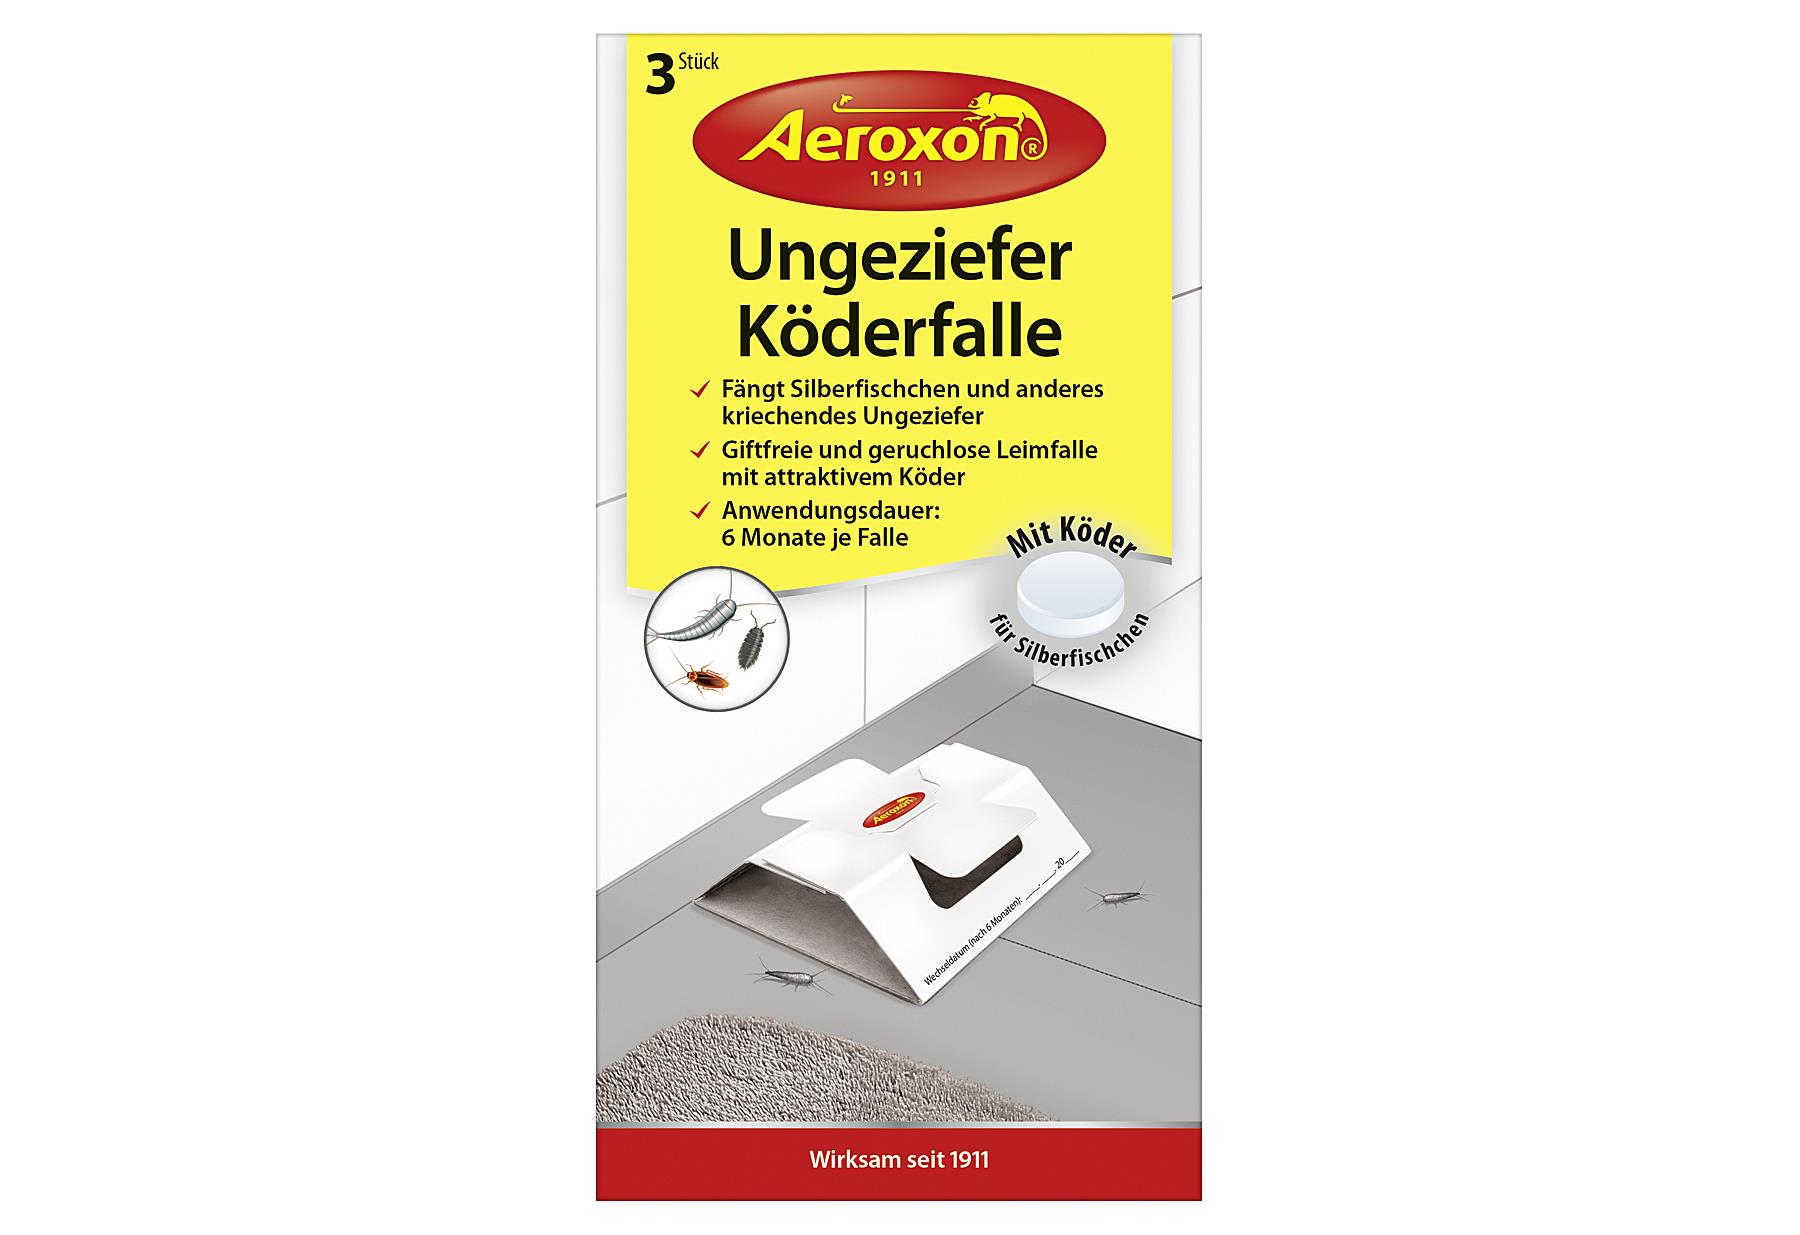 Aeroxon Ungeziefer-Köderfalle Packung mit 3 Stück